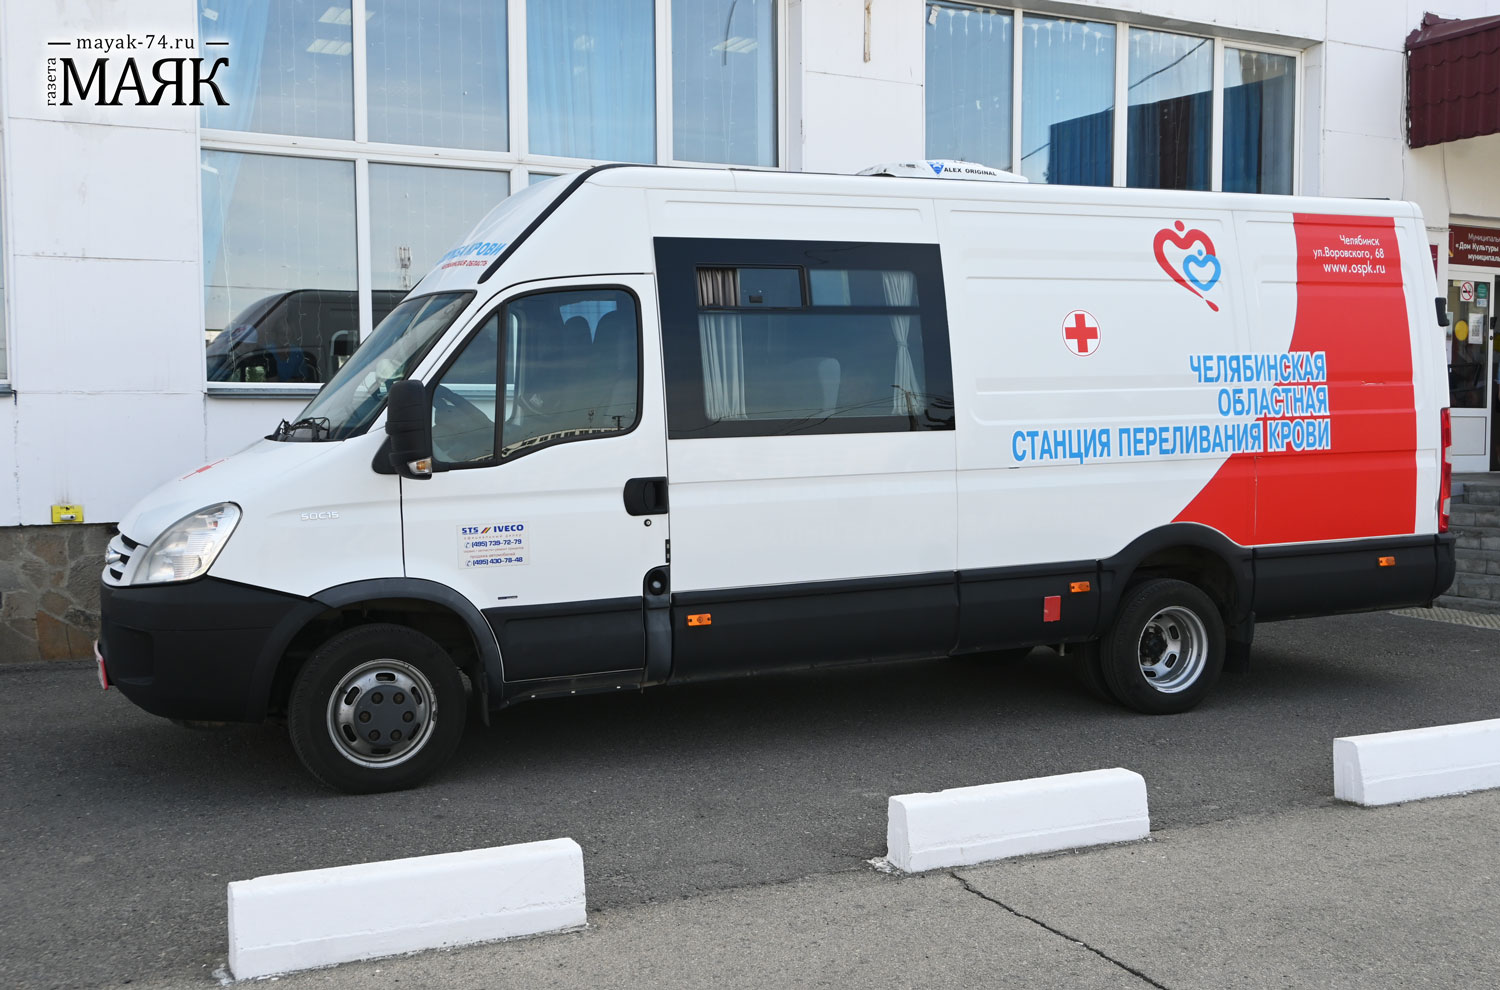 Около 16 литров крови сегодня сдали жители Красноармейского района 